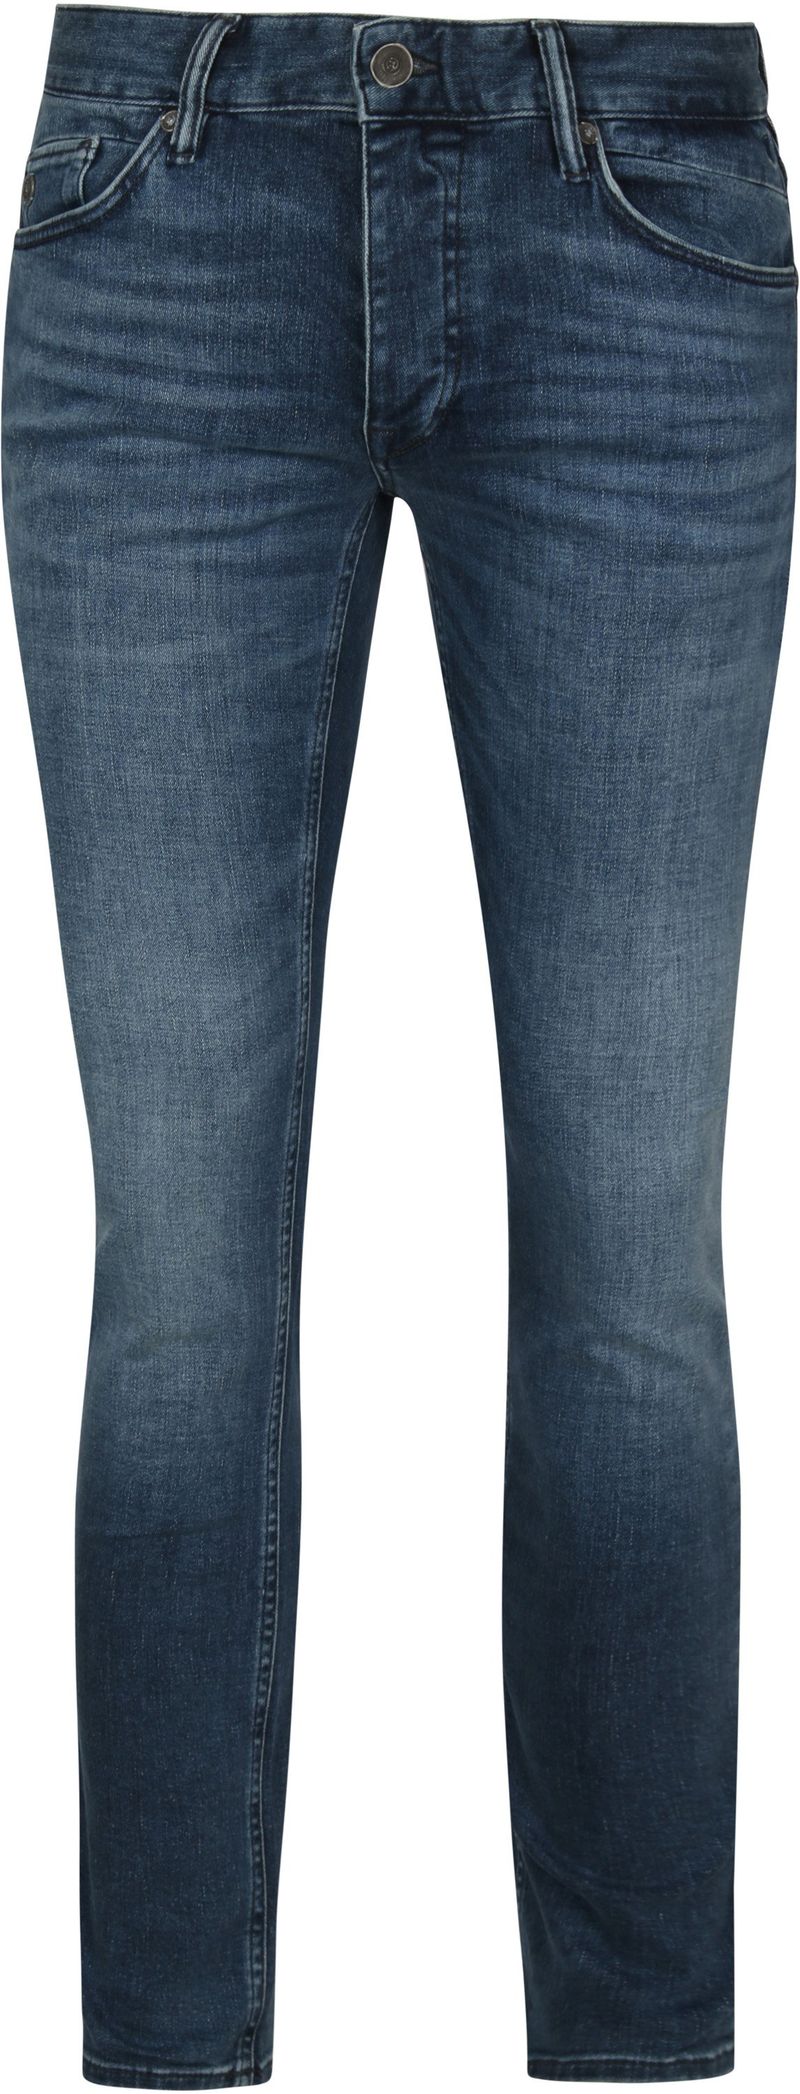 Cast Iron Riser Jeans ATB Blau - Größe W 29 - L 32 von Cast Iron